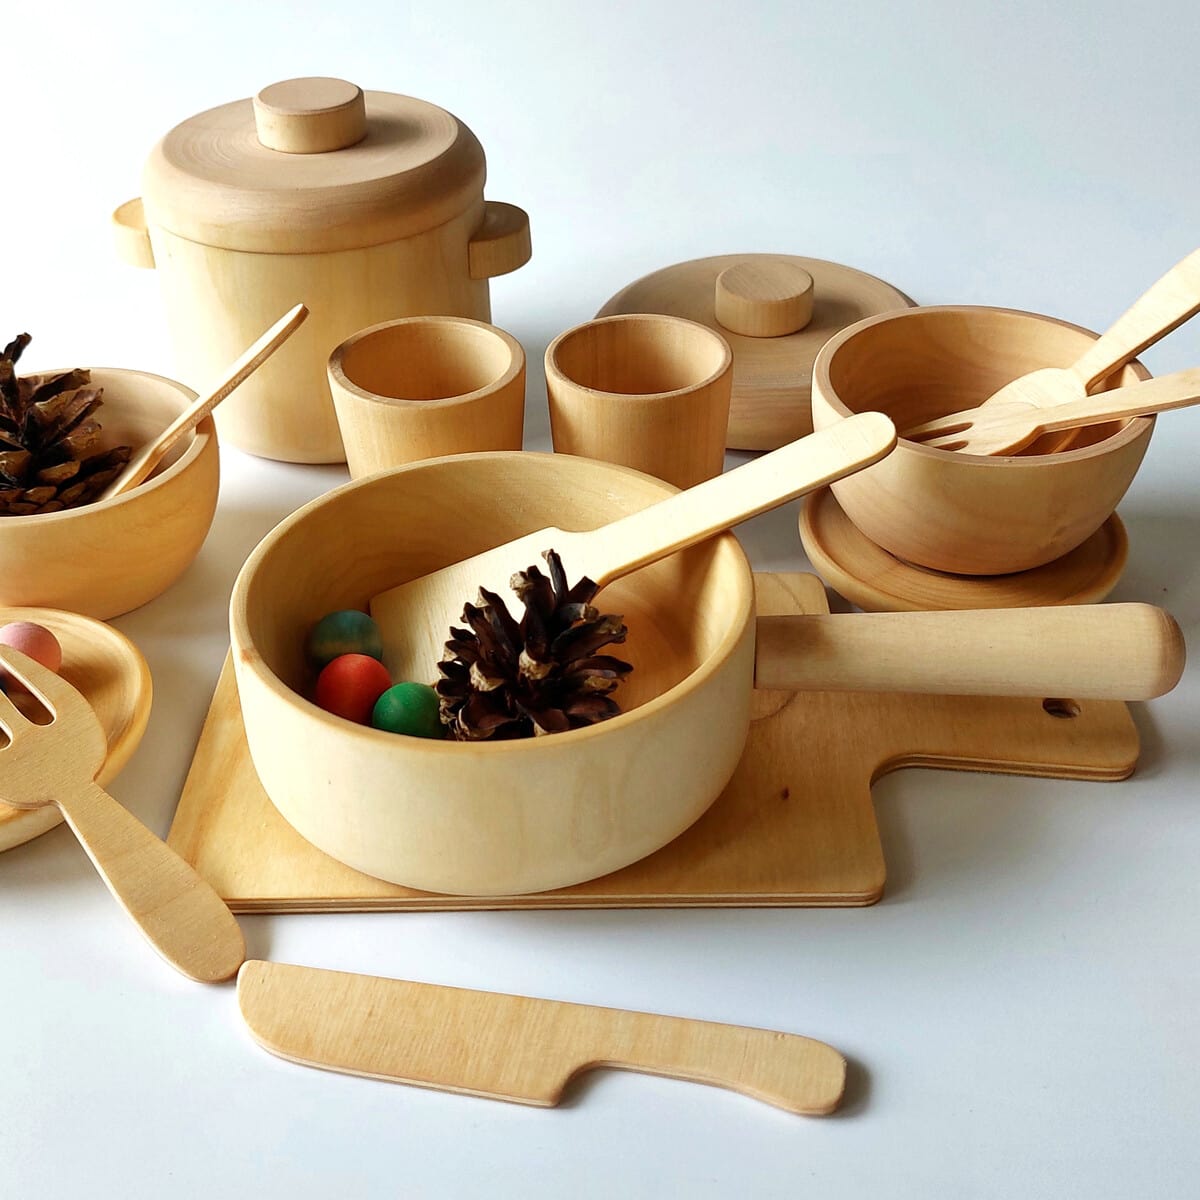 Еда деревянная купить. Деревянная посуда. Деревянная посуда для еды. Деревянная игрушечная посуда. Деревянный набор для кухни.